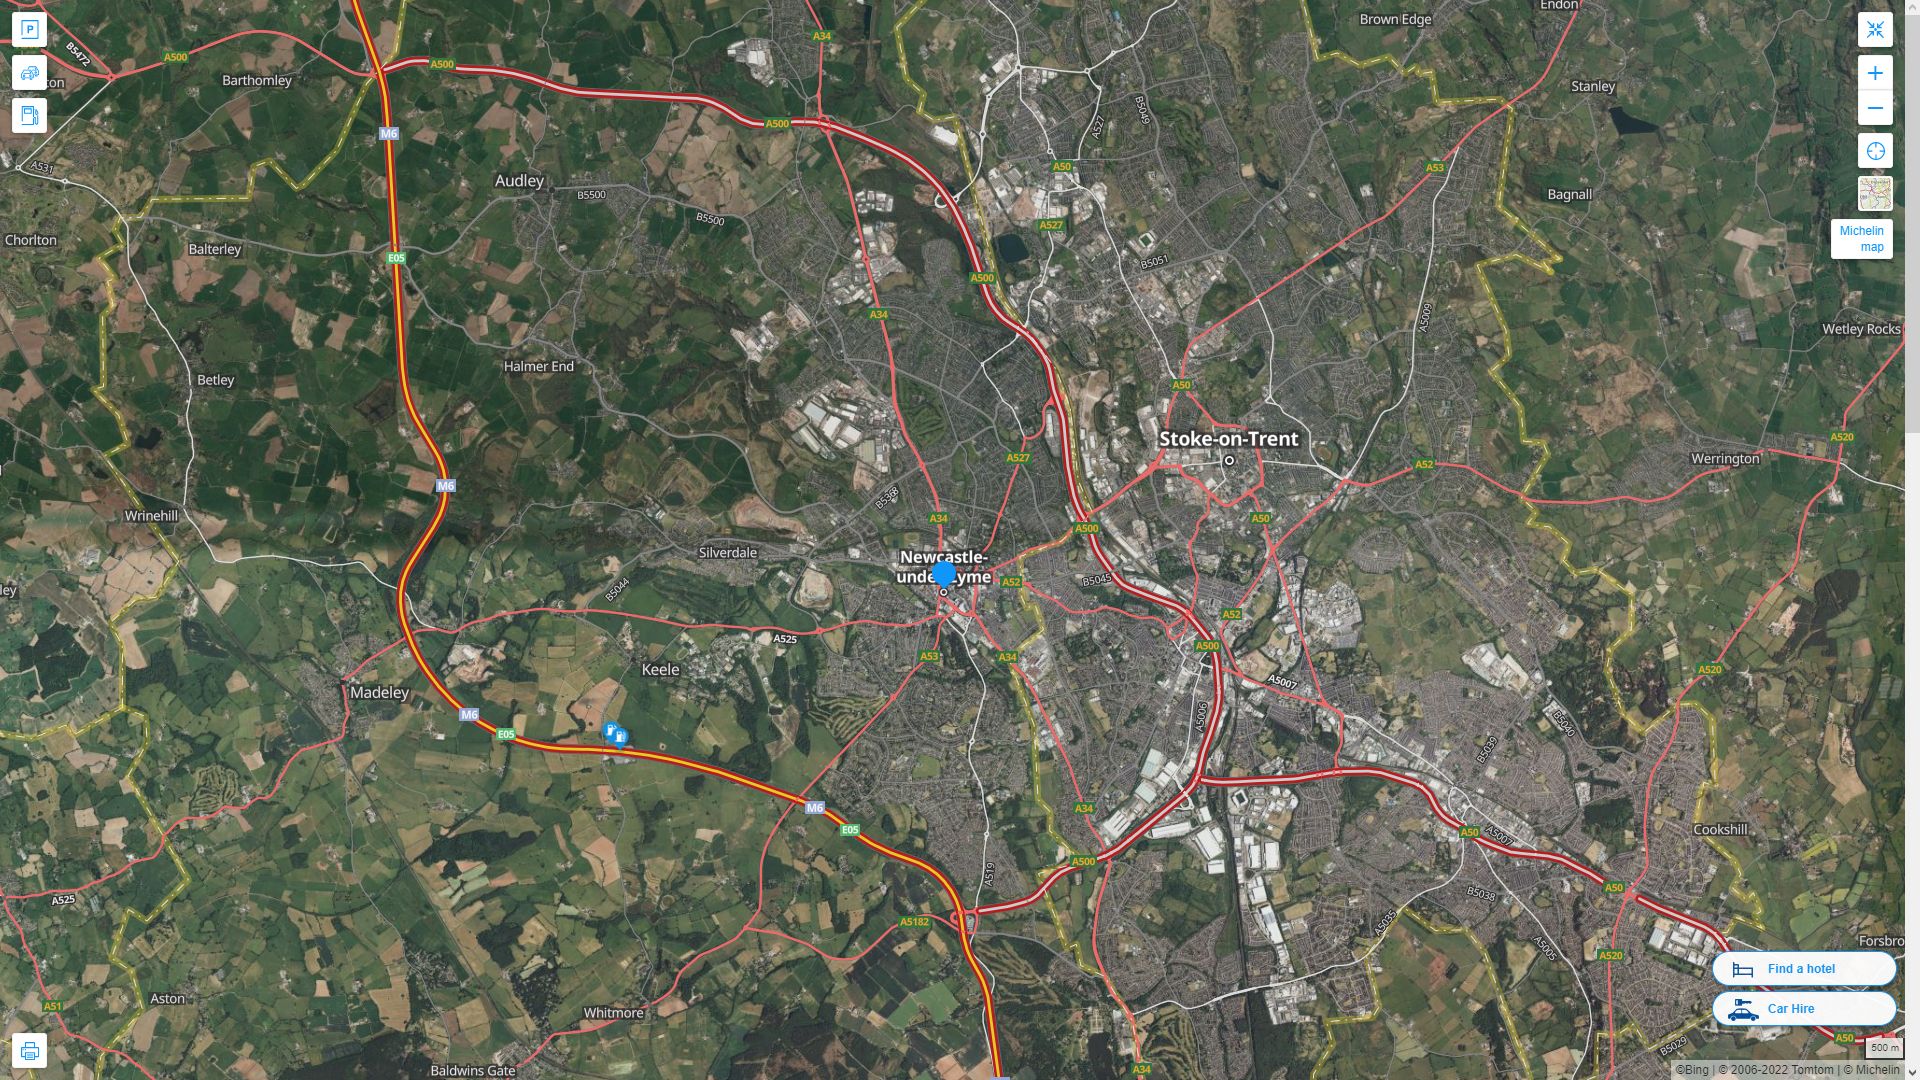 Newcastle under Lyme Royaume Uni Autoroute et carte routiere avec vue satellite